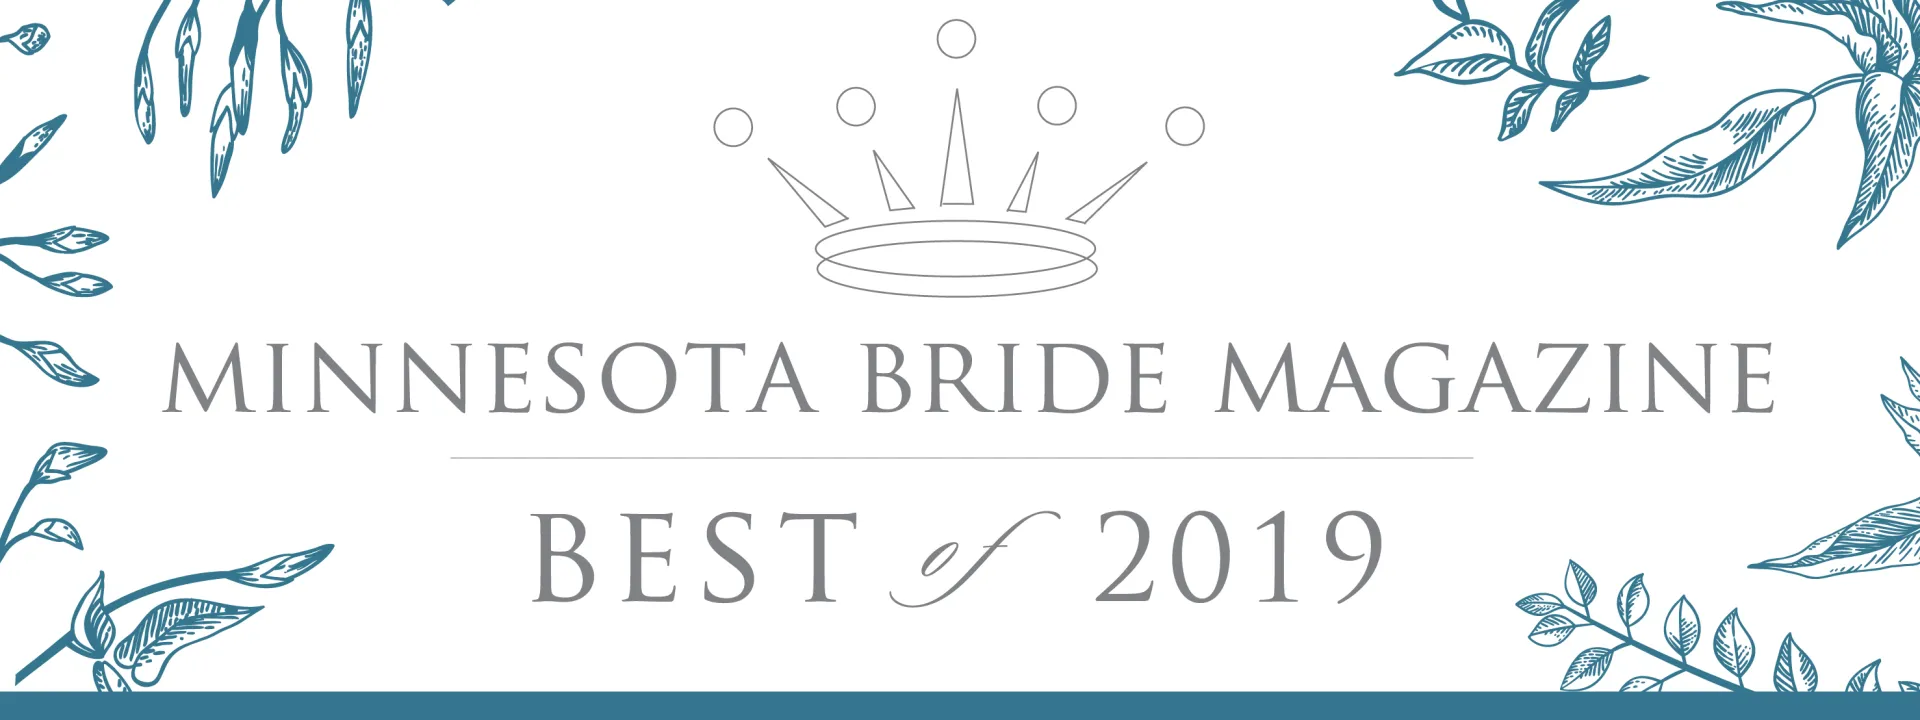 Minnesota Bride Best Of Winners